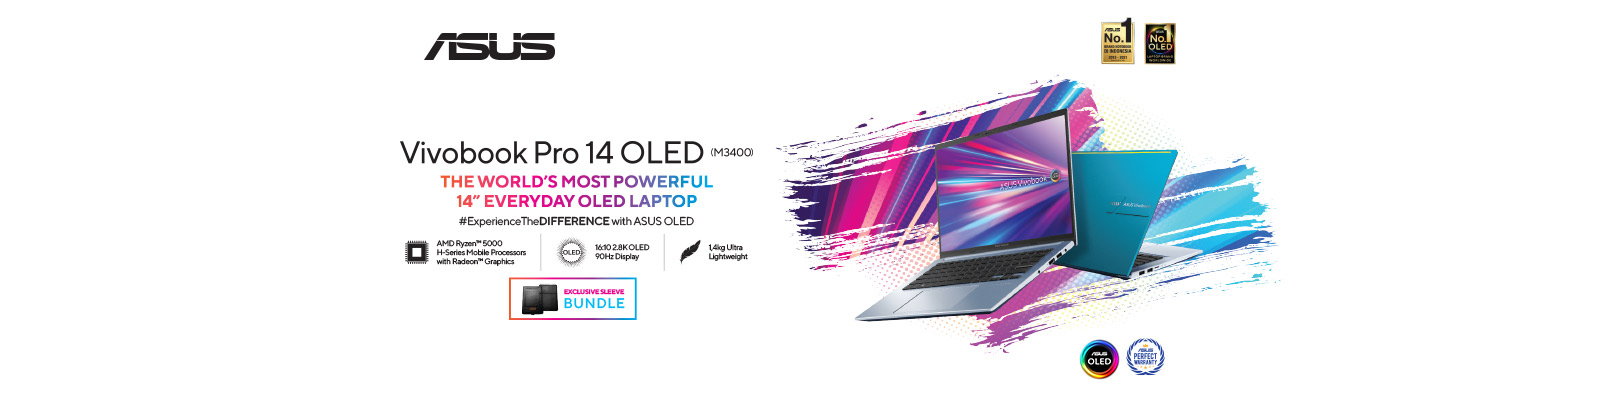 Review Asus Vivobook Pro 14 Oled M3400 Laptop Dengan 50 Off